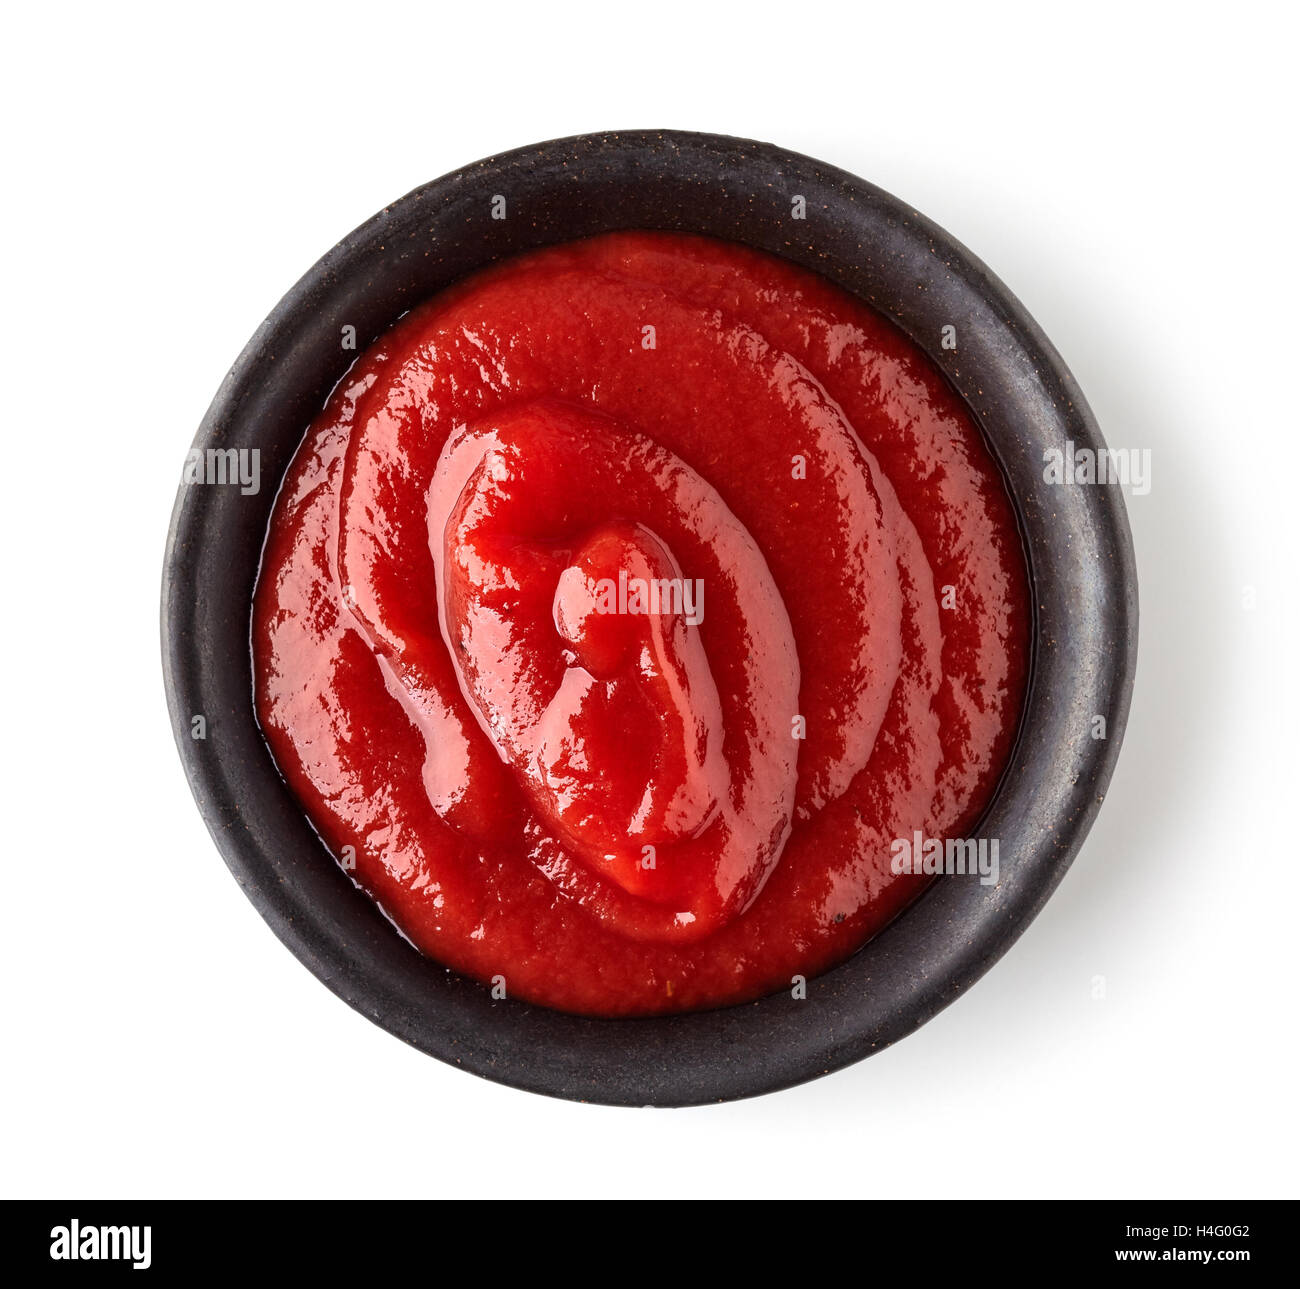 Schüssel mit Ketchup oder Tomaten sauce isolierten auf weißen Hintergrund, Ansicht von oben Stockfoto